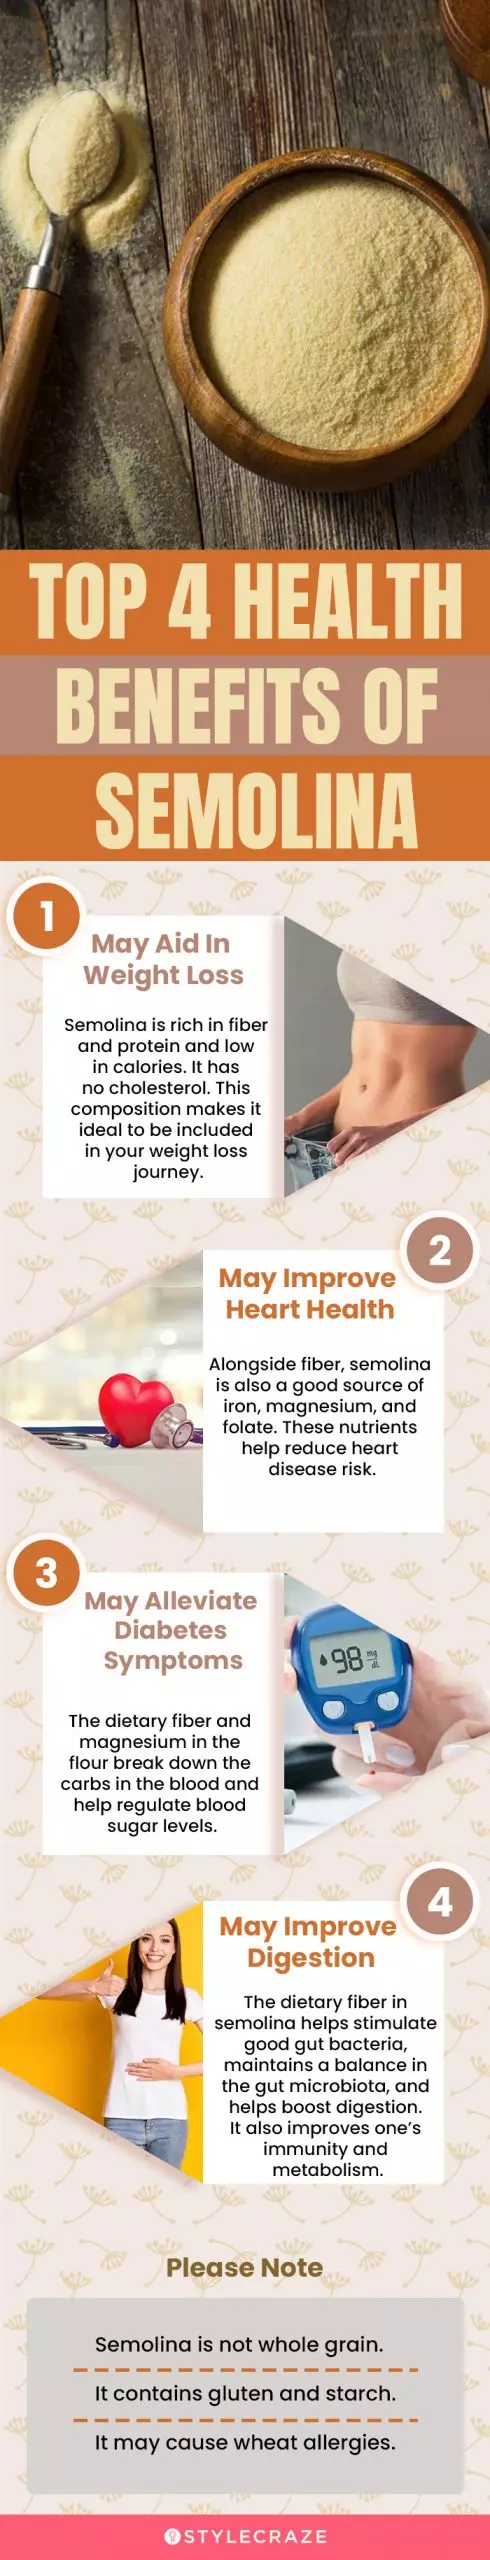 top 4 health benefits of semolina (infographic)